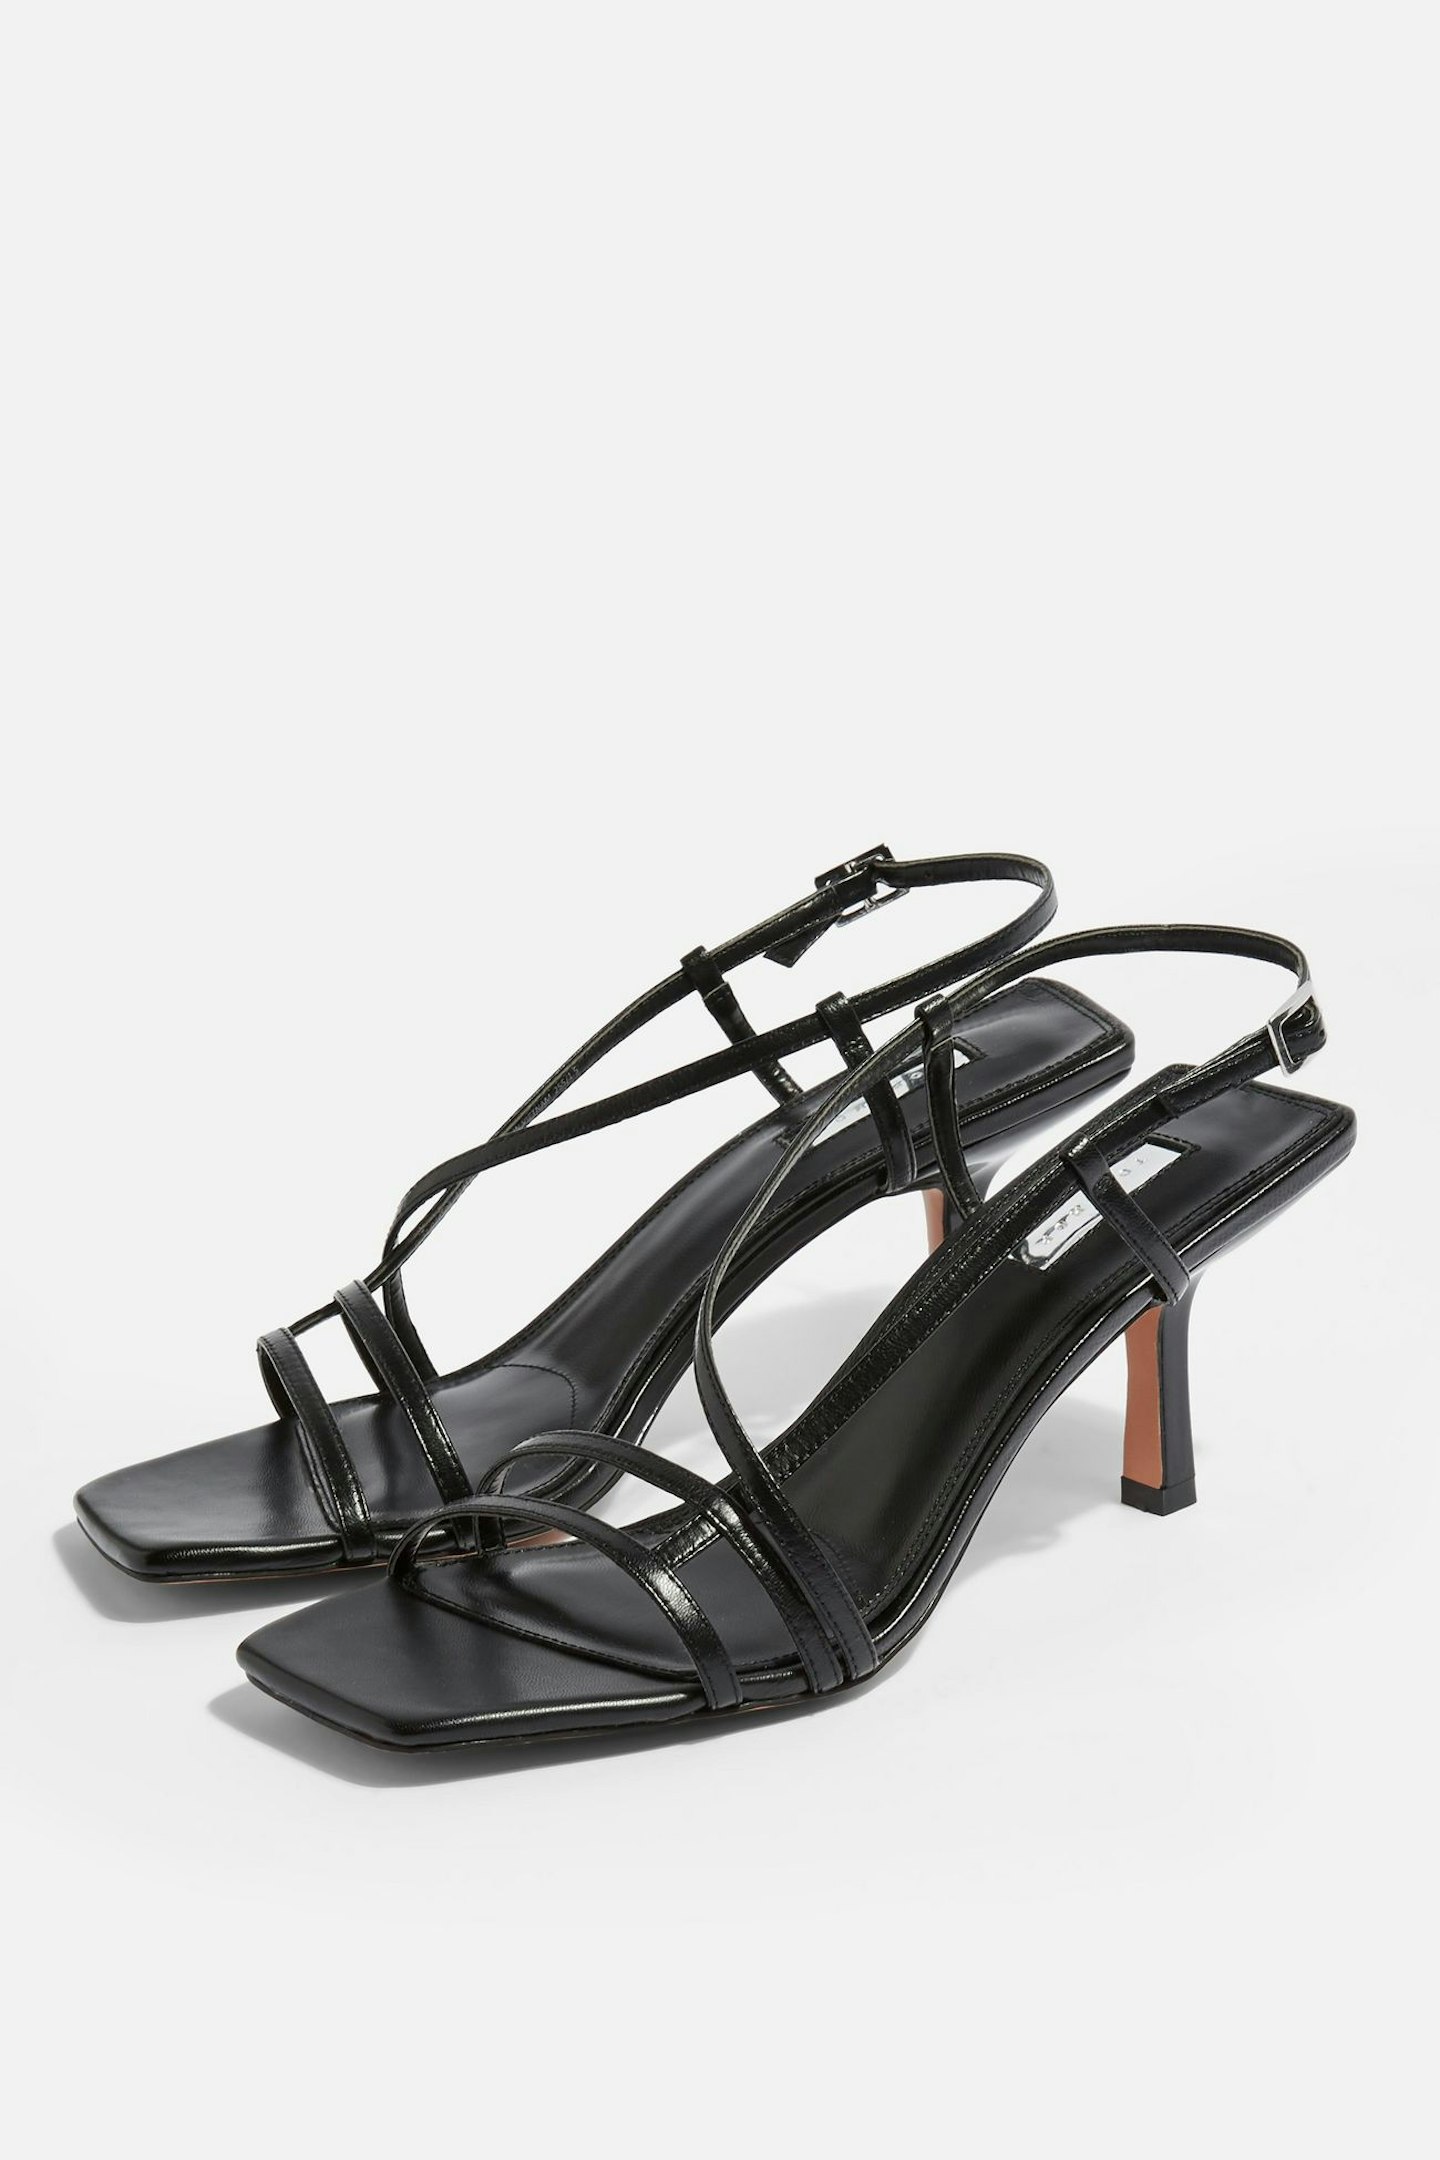 STRIPPY Black Heeled Sandals, £39